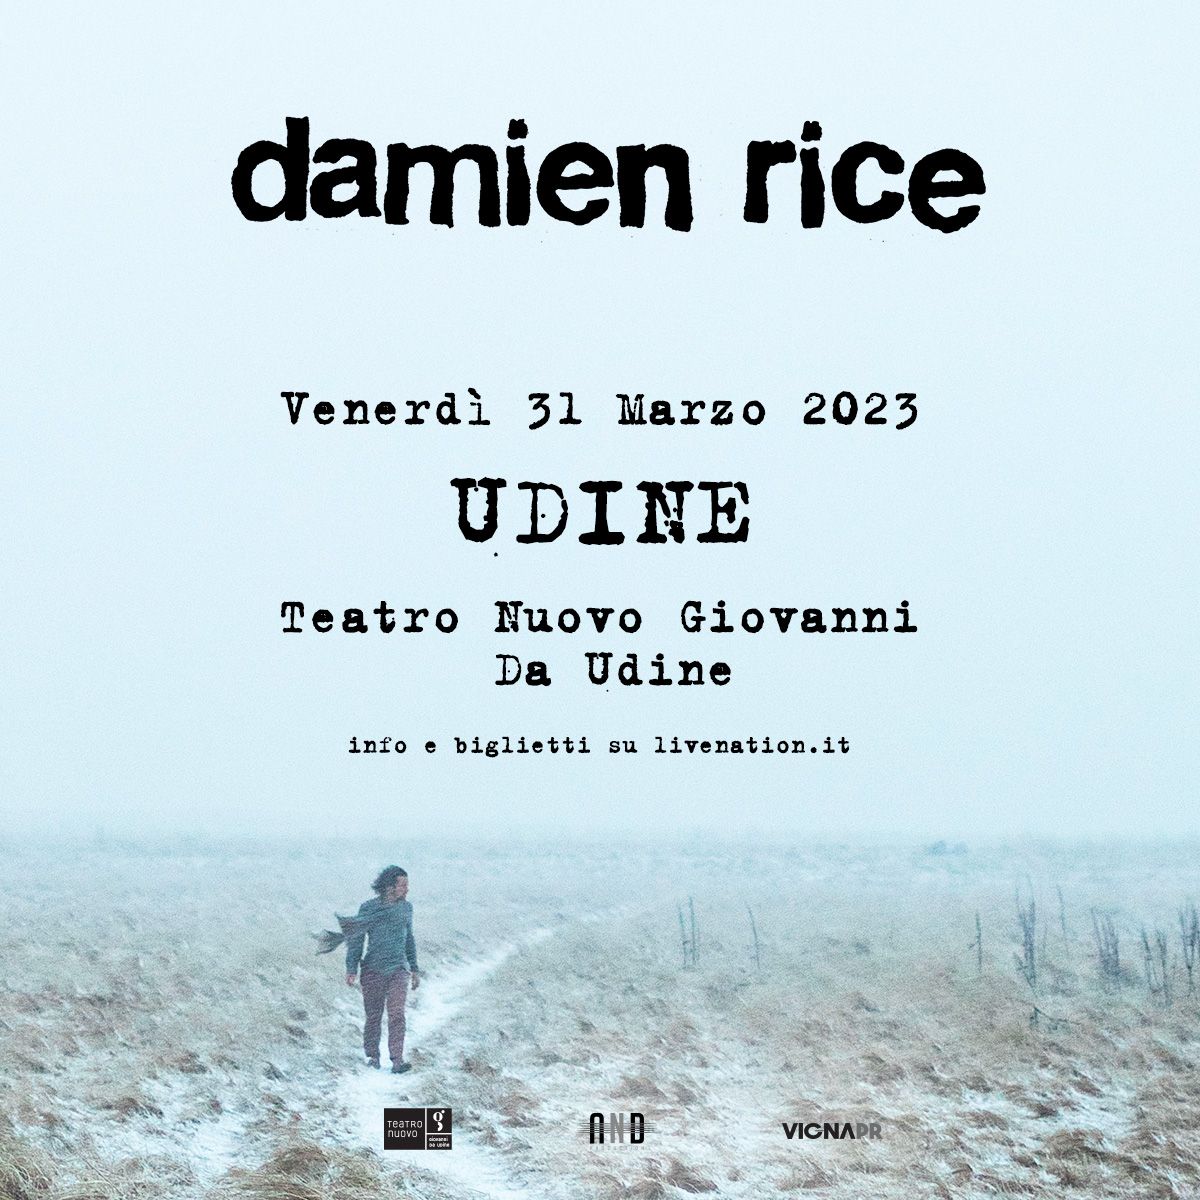 DAMIEN RICE, uno dei più grandi cantautori del nostro tempo, il 31 marzo al Teatro Nuovo Giovanni da Udine